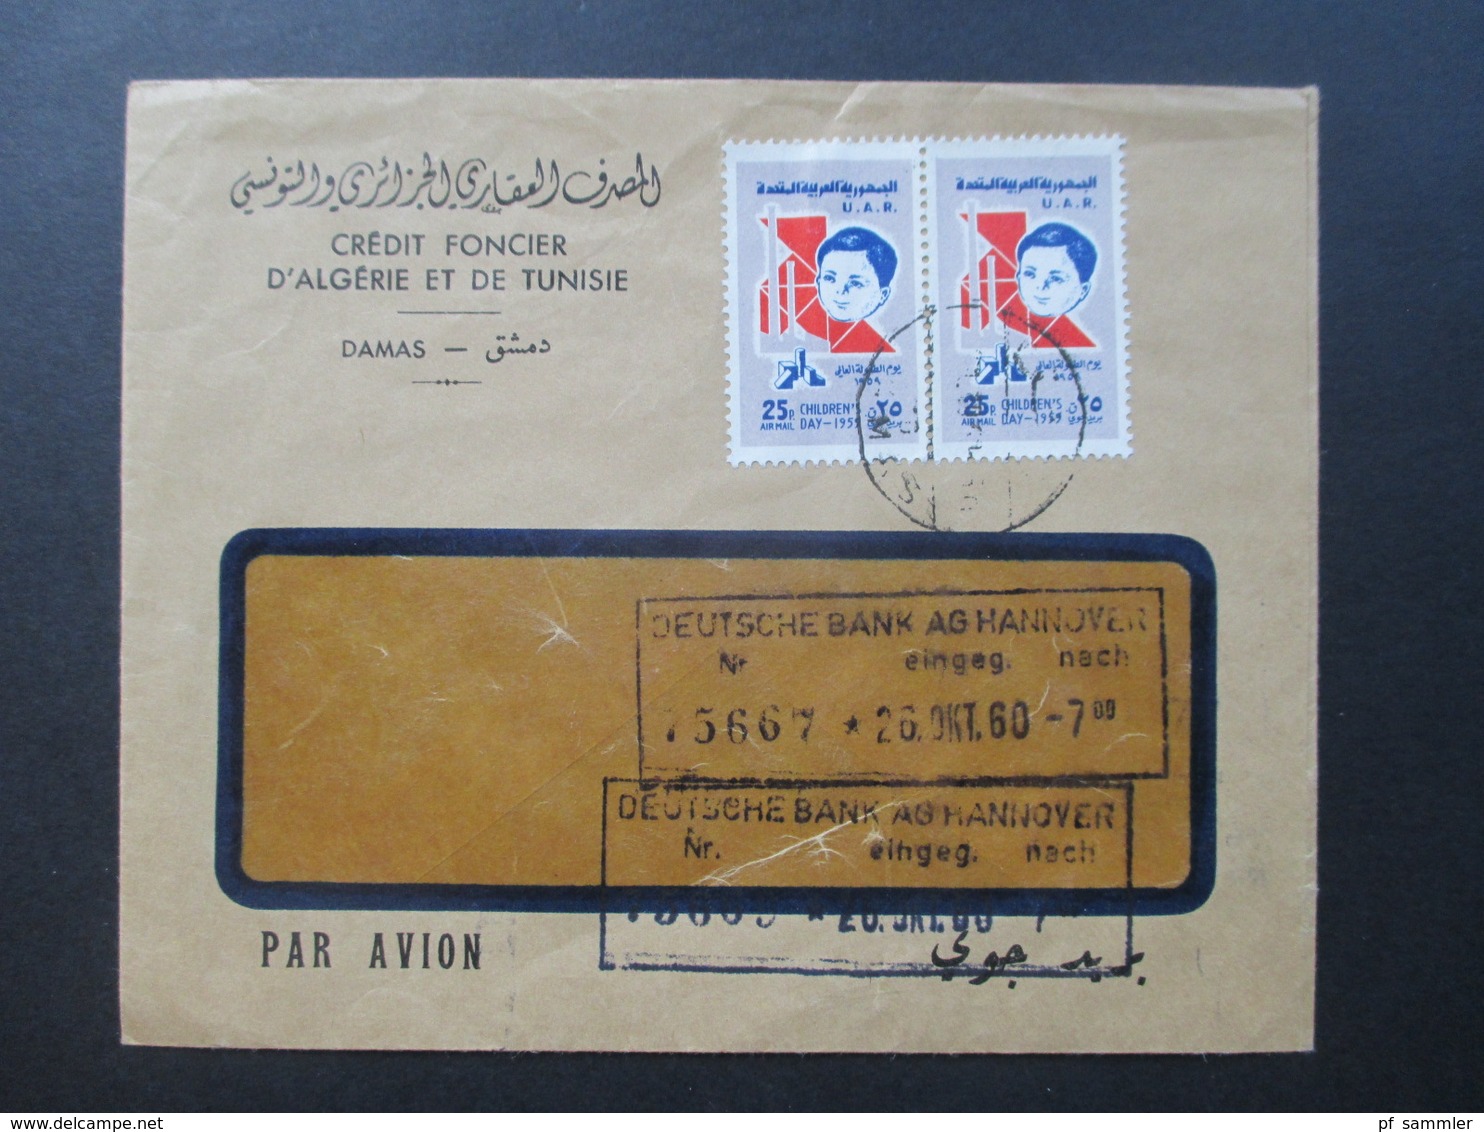 Syrien / UAR 1960 Air Mail / Luftpost Credit Foncier D'Algerie Et De Tunisie Damas. Marken Children's Day 1959 - Syrien